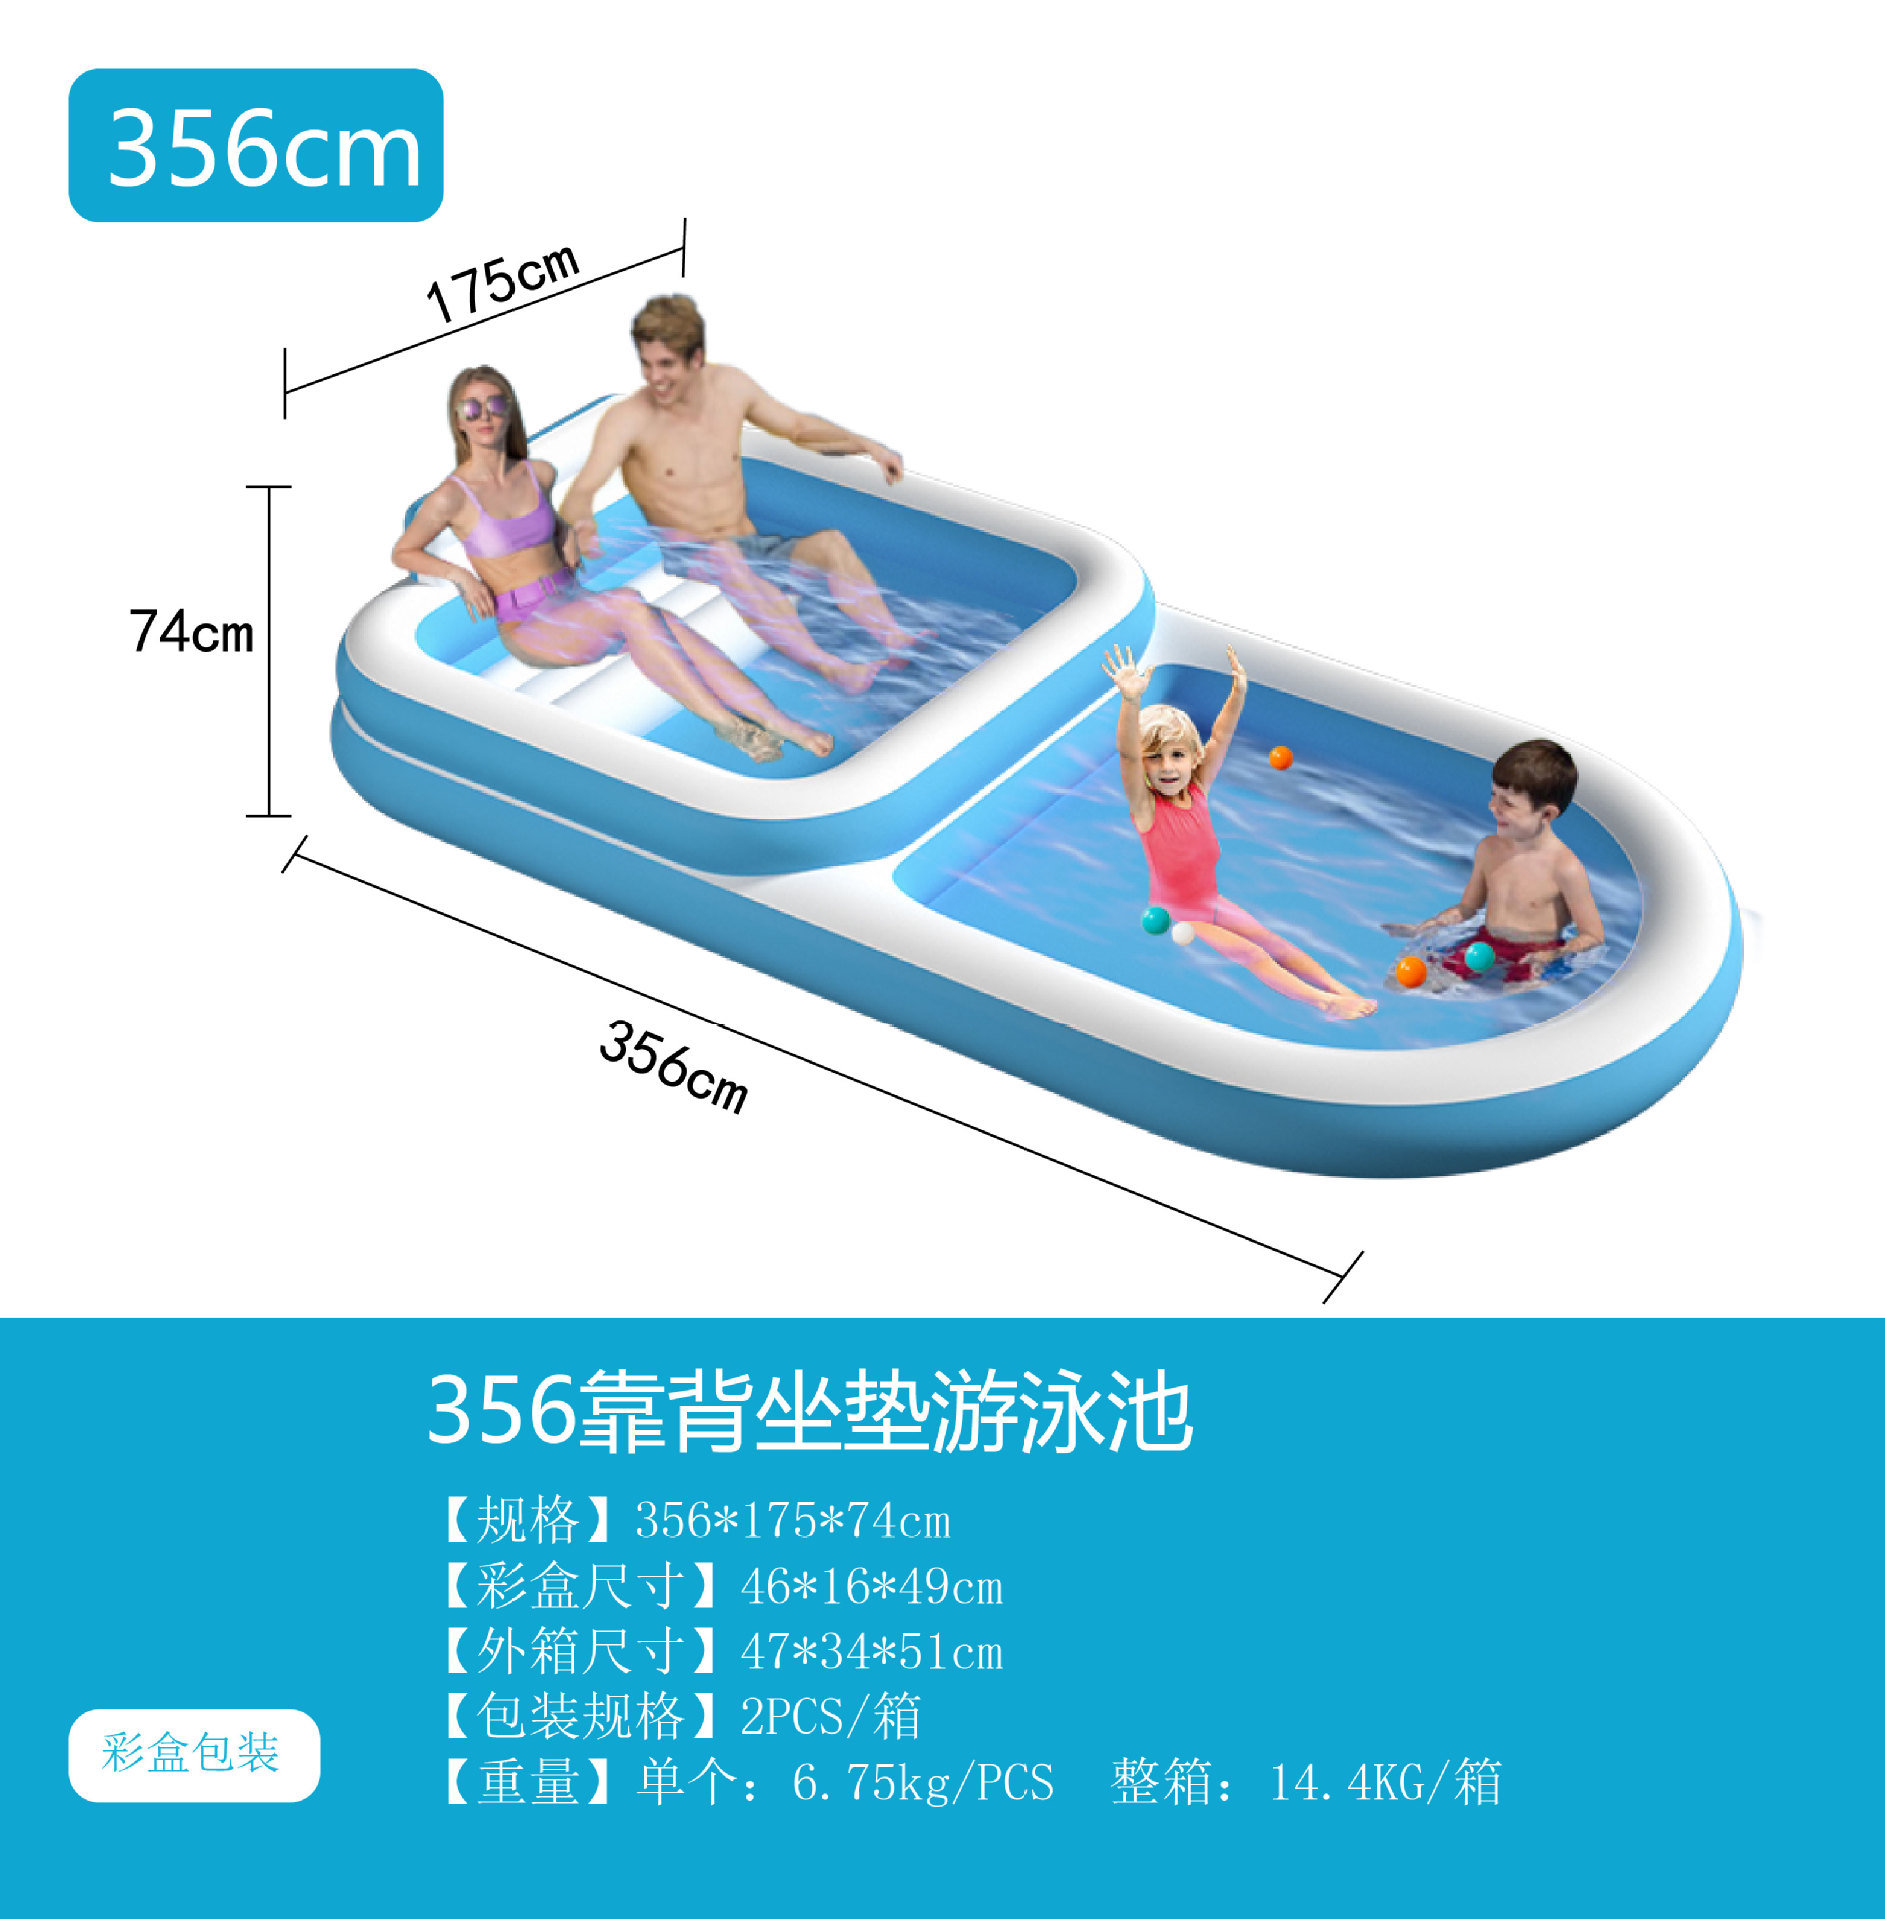 可爱的宝宝在浴盆里洗澡-蓝牛仔影像-中国原创广告影像素材